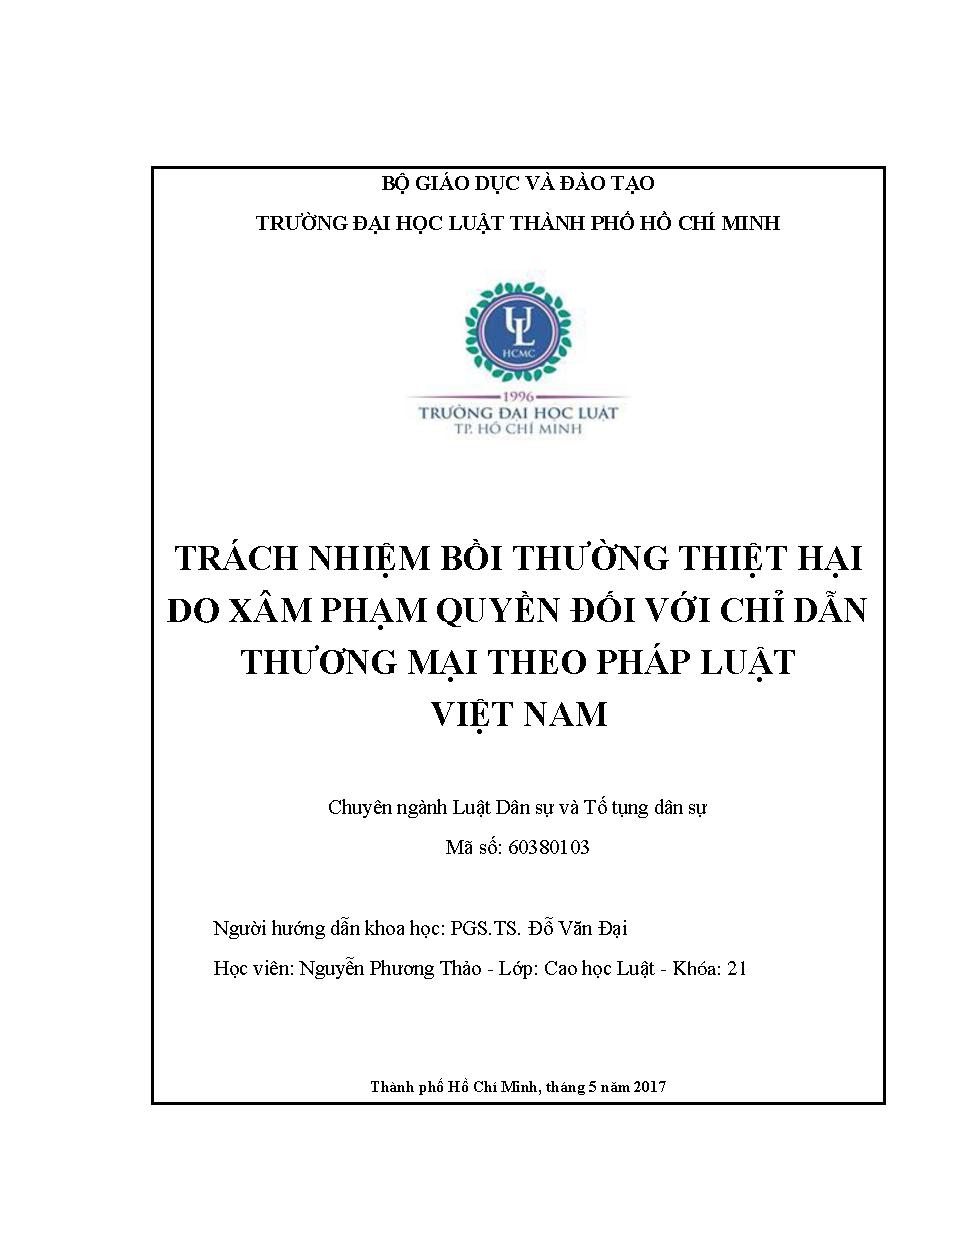 Trách nhiệm bồi thường thiệt hại do xâm phạm quyền đối với chỉ dẫn thương mại theo pháp luật Việt Nam